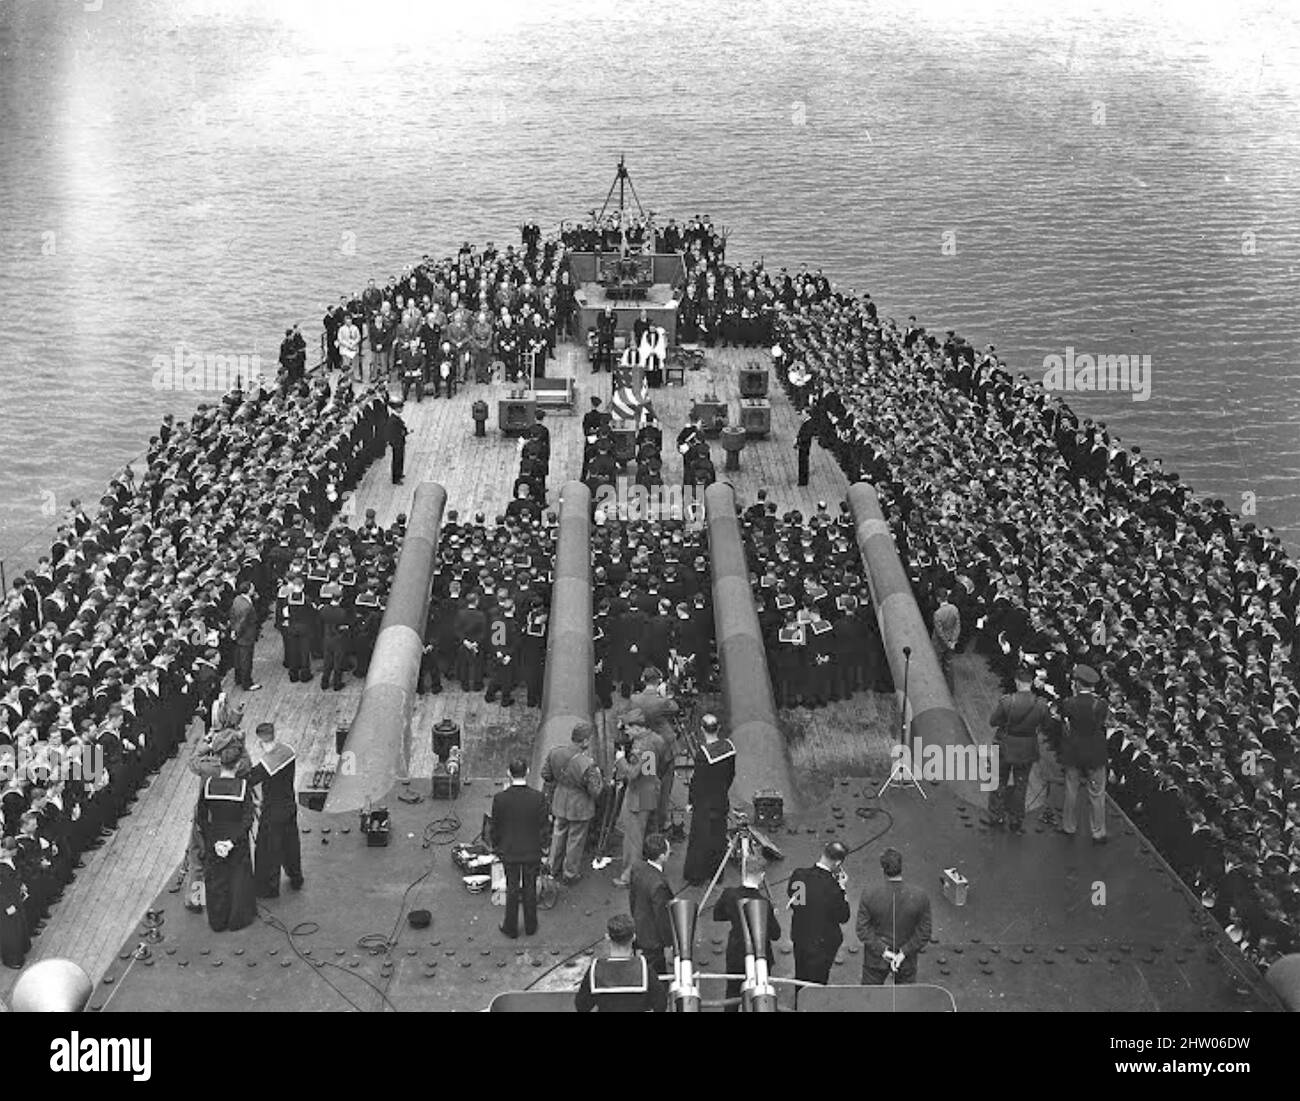 CONFERENZA ATLANTICA (in codice Riviera) 9-12 agosto 1941. Salutare gli  antemi nazionali a bordo della HMS Prince of Wales al largo della costa di  Terranova durante la Conferenza sulla carta atlantica tra